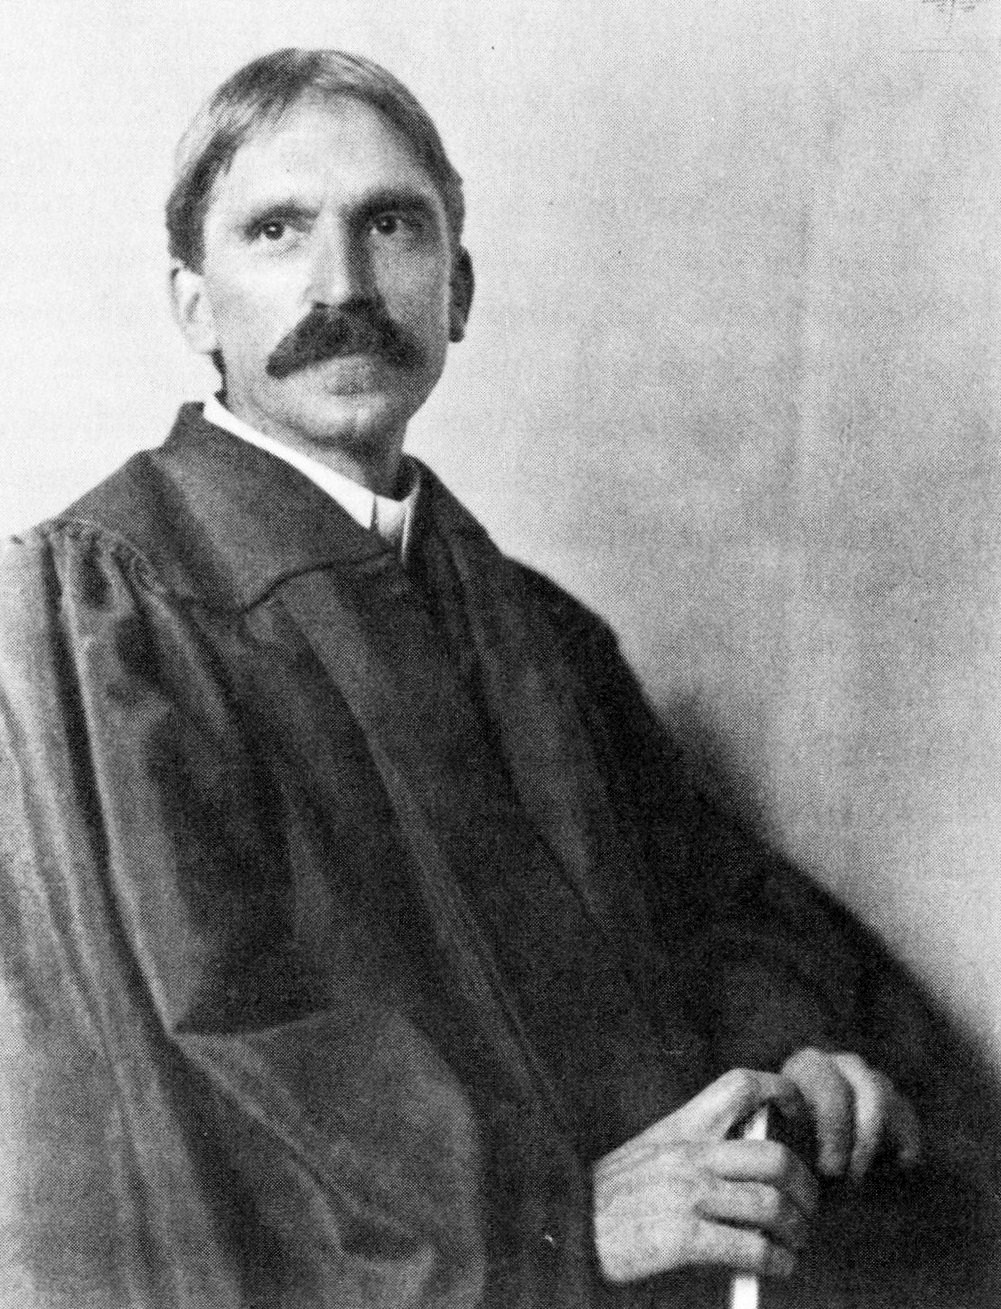 John Dewey in 1902